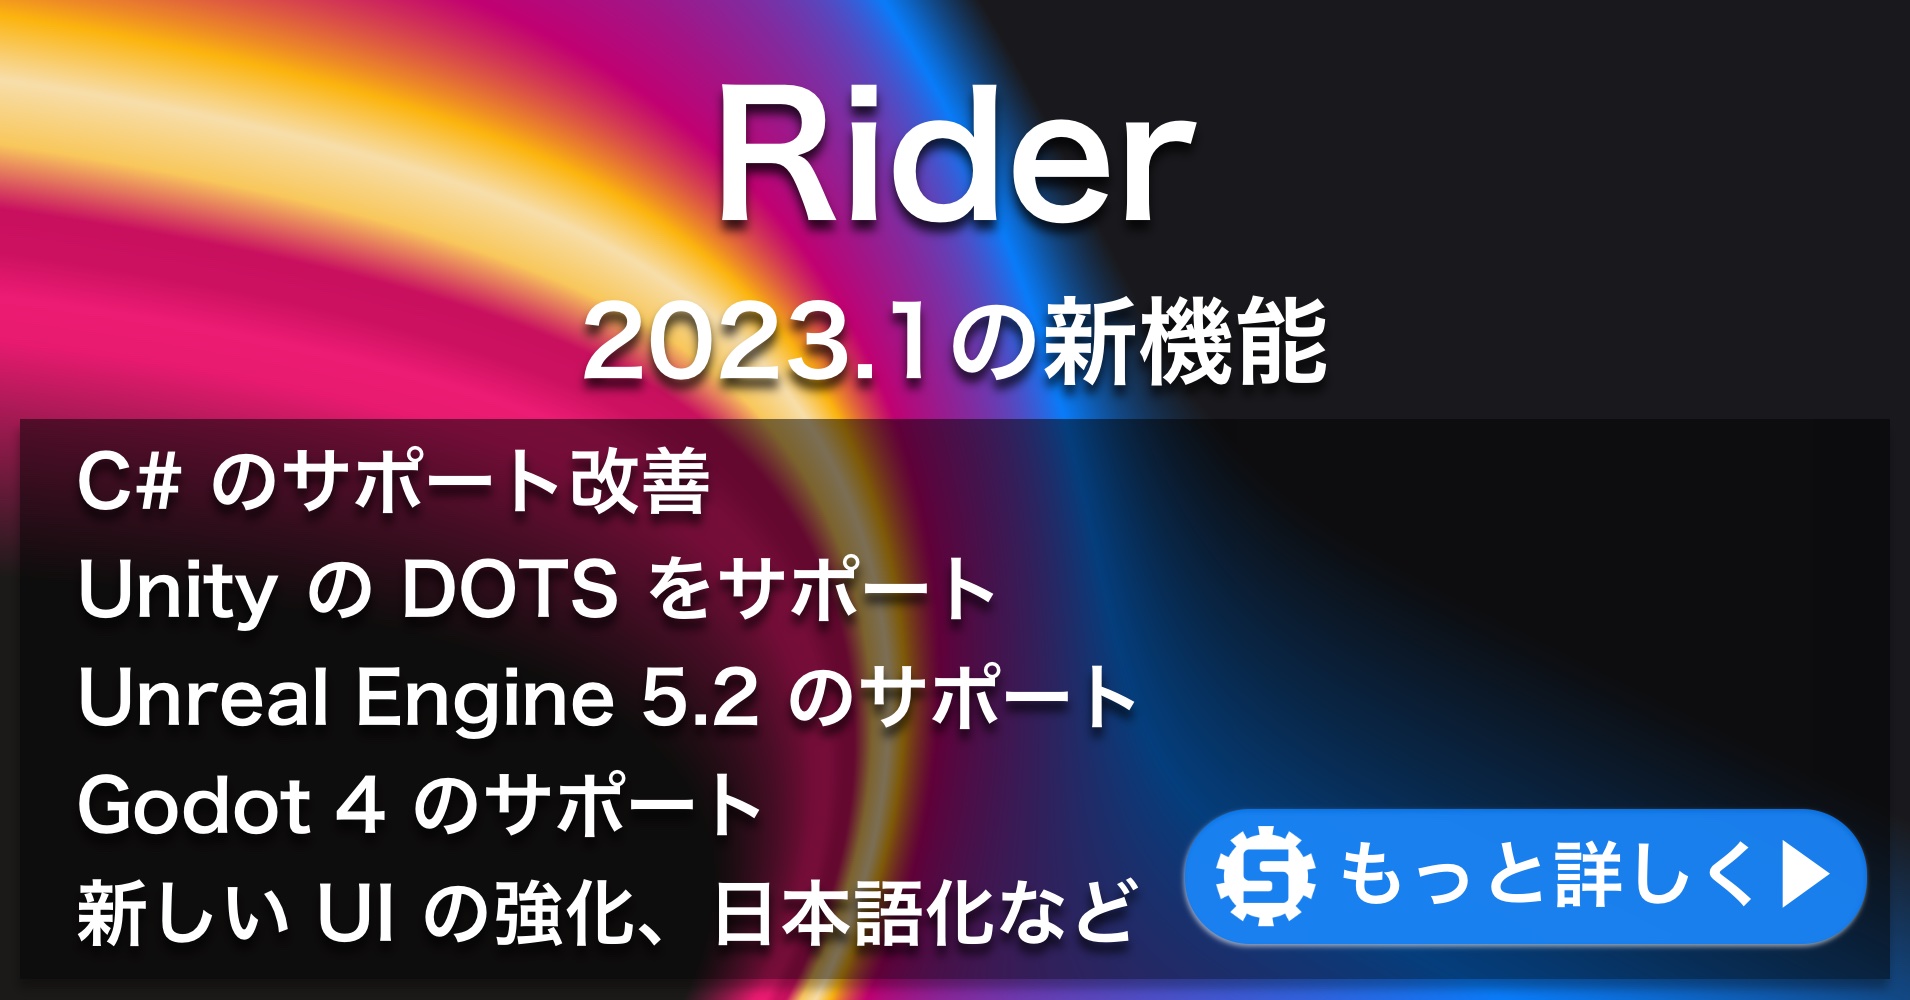 Rider 2023.1の新機能